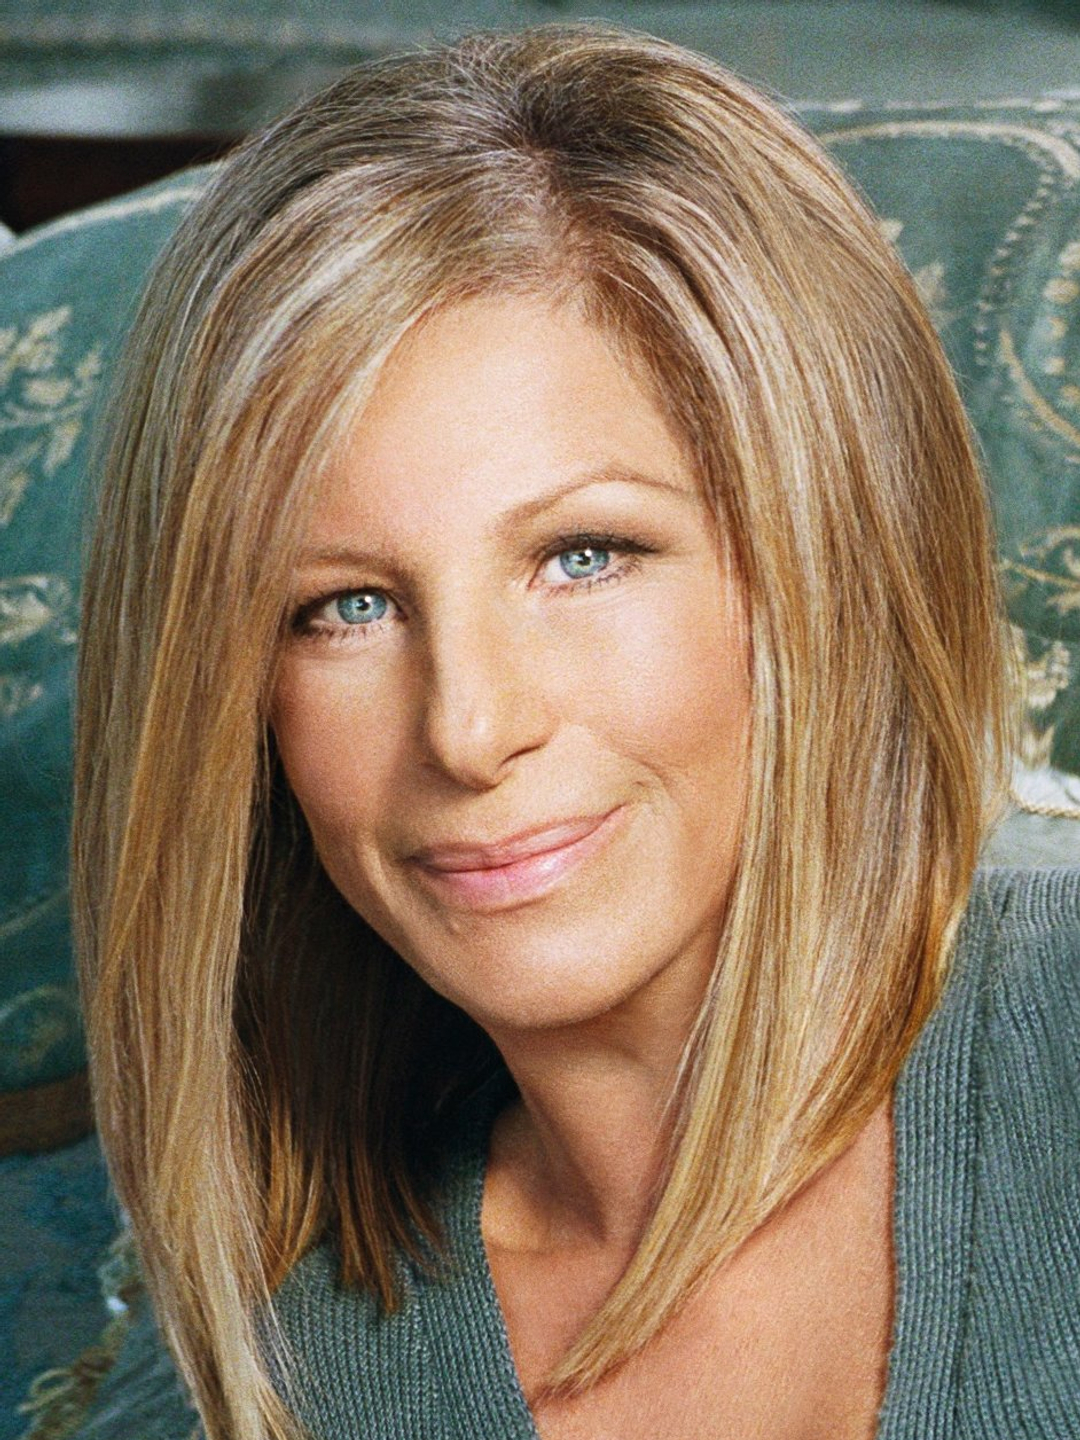 Barbra Streisand where does she live